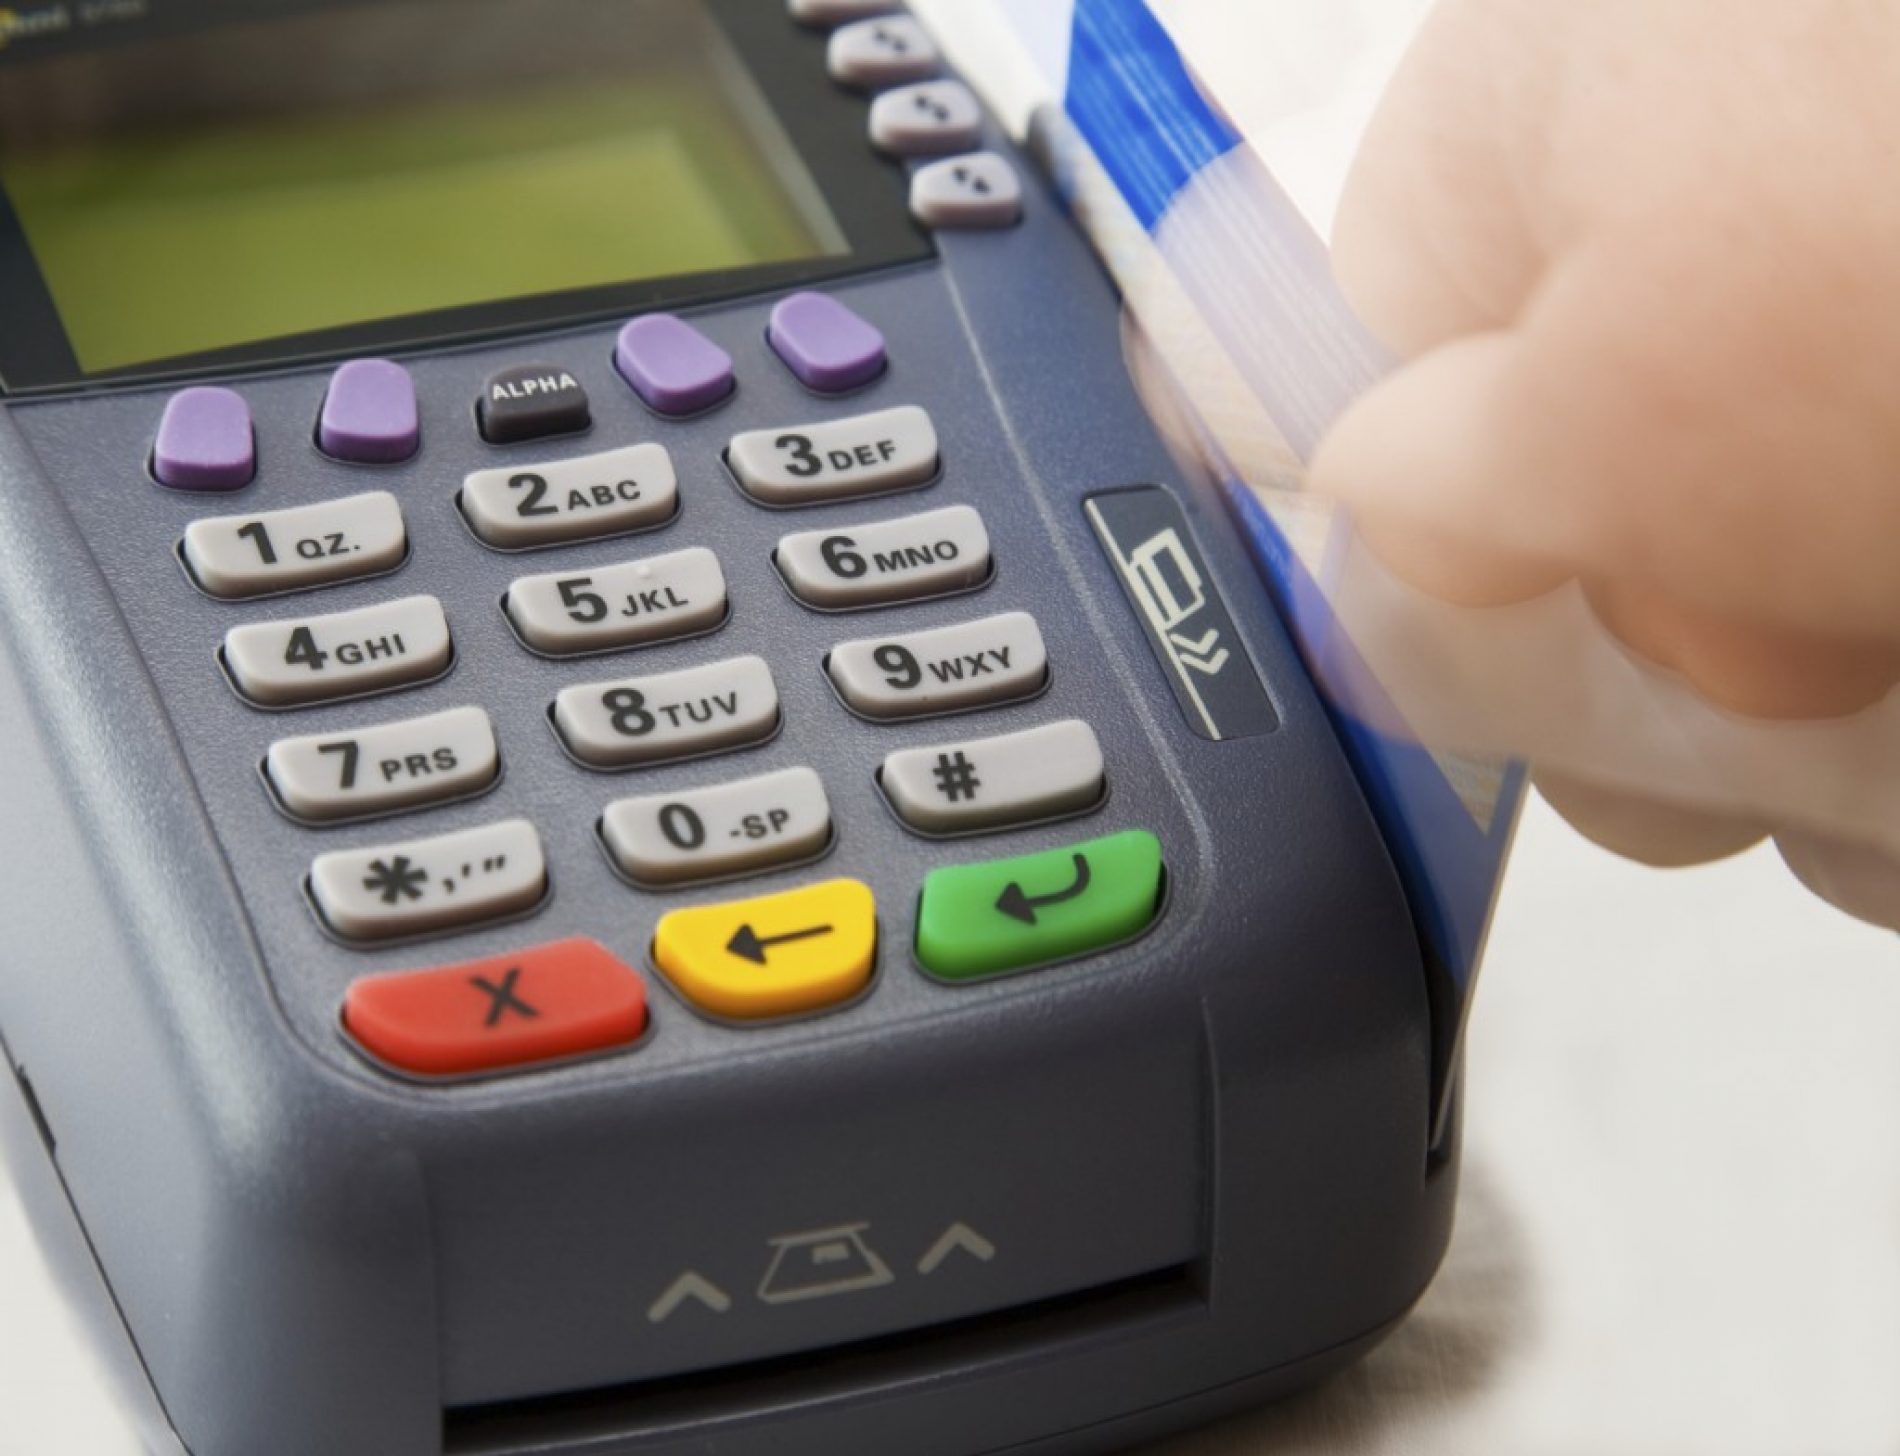 BARRETOS: Atendente tem mais de 4 mil em compras indevidas em seu cartão de crédito